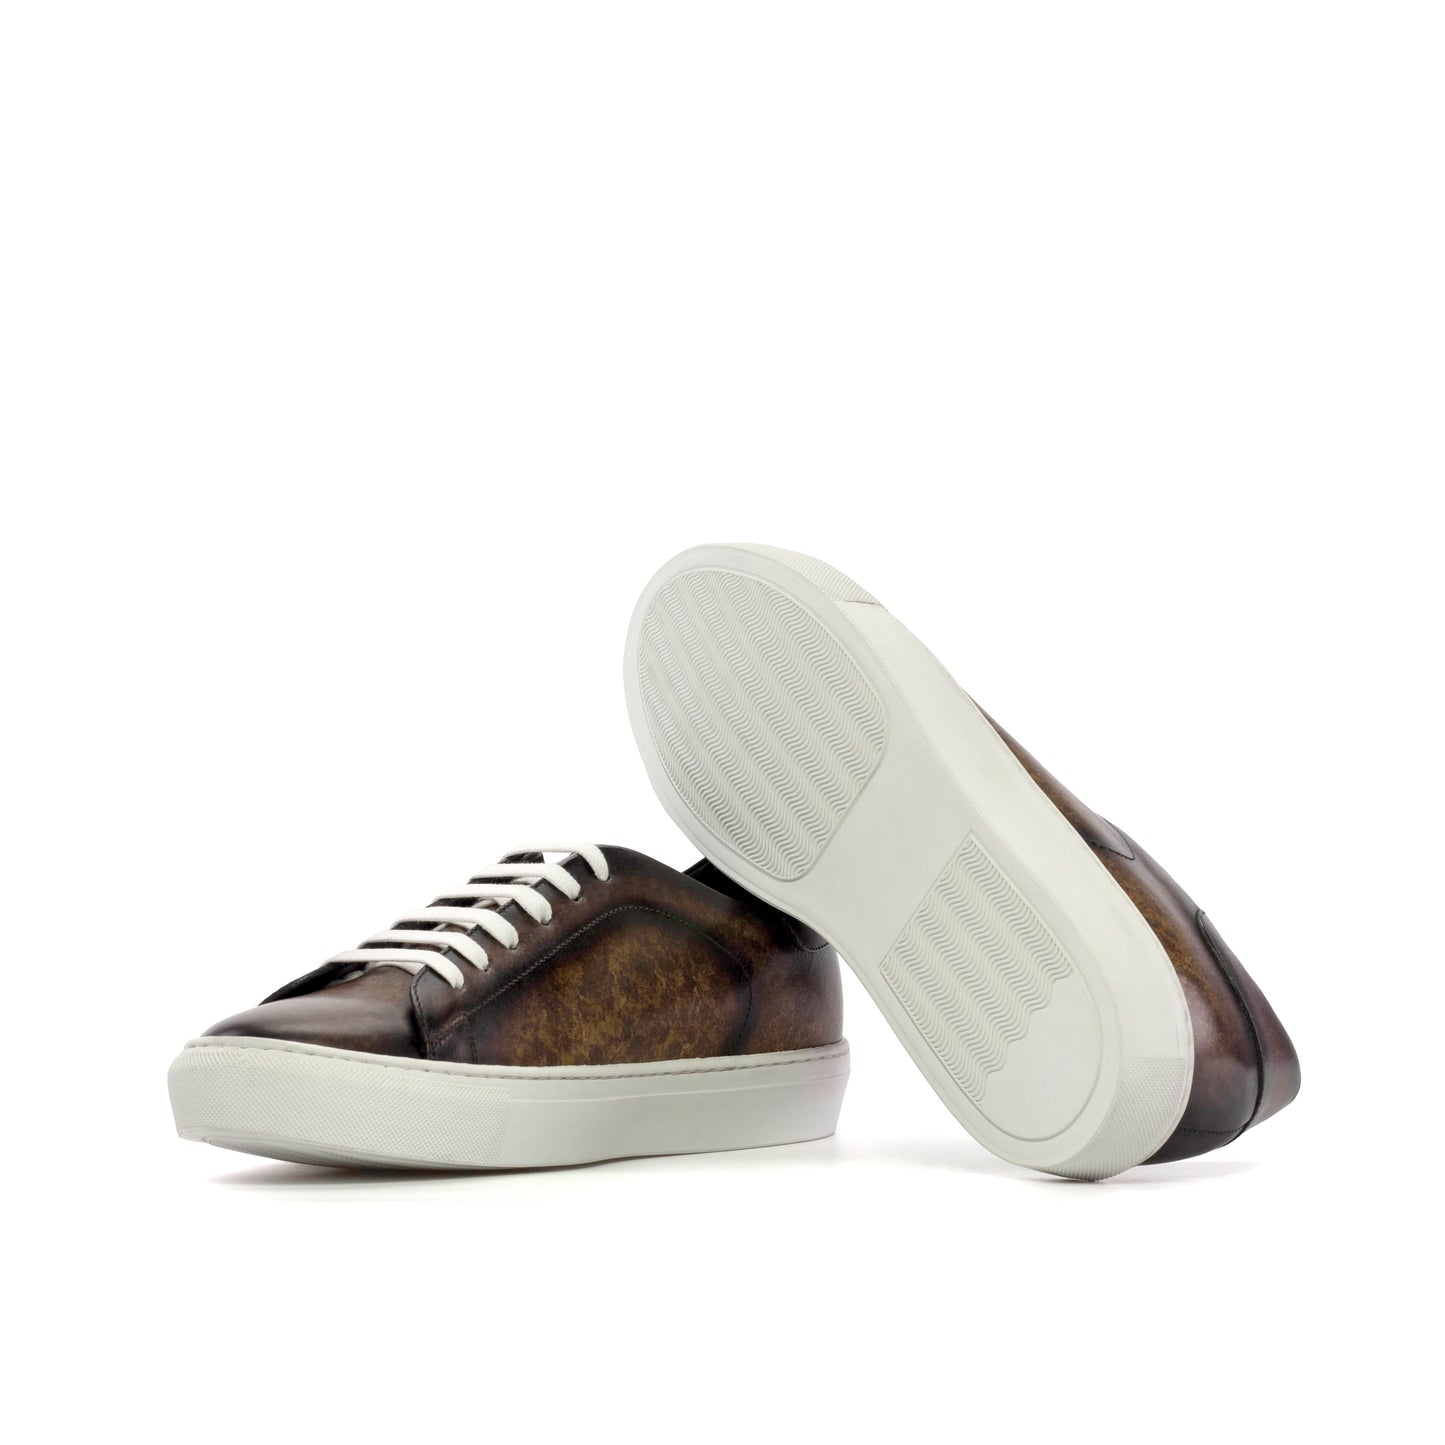 Sneakers brown patina